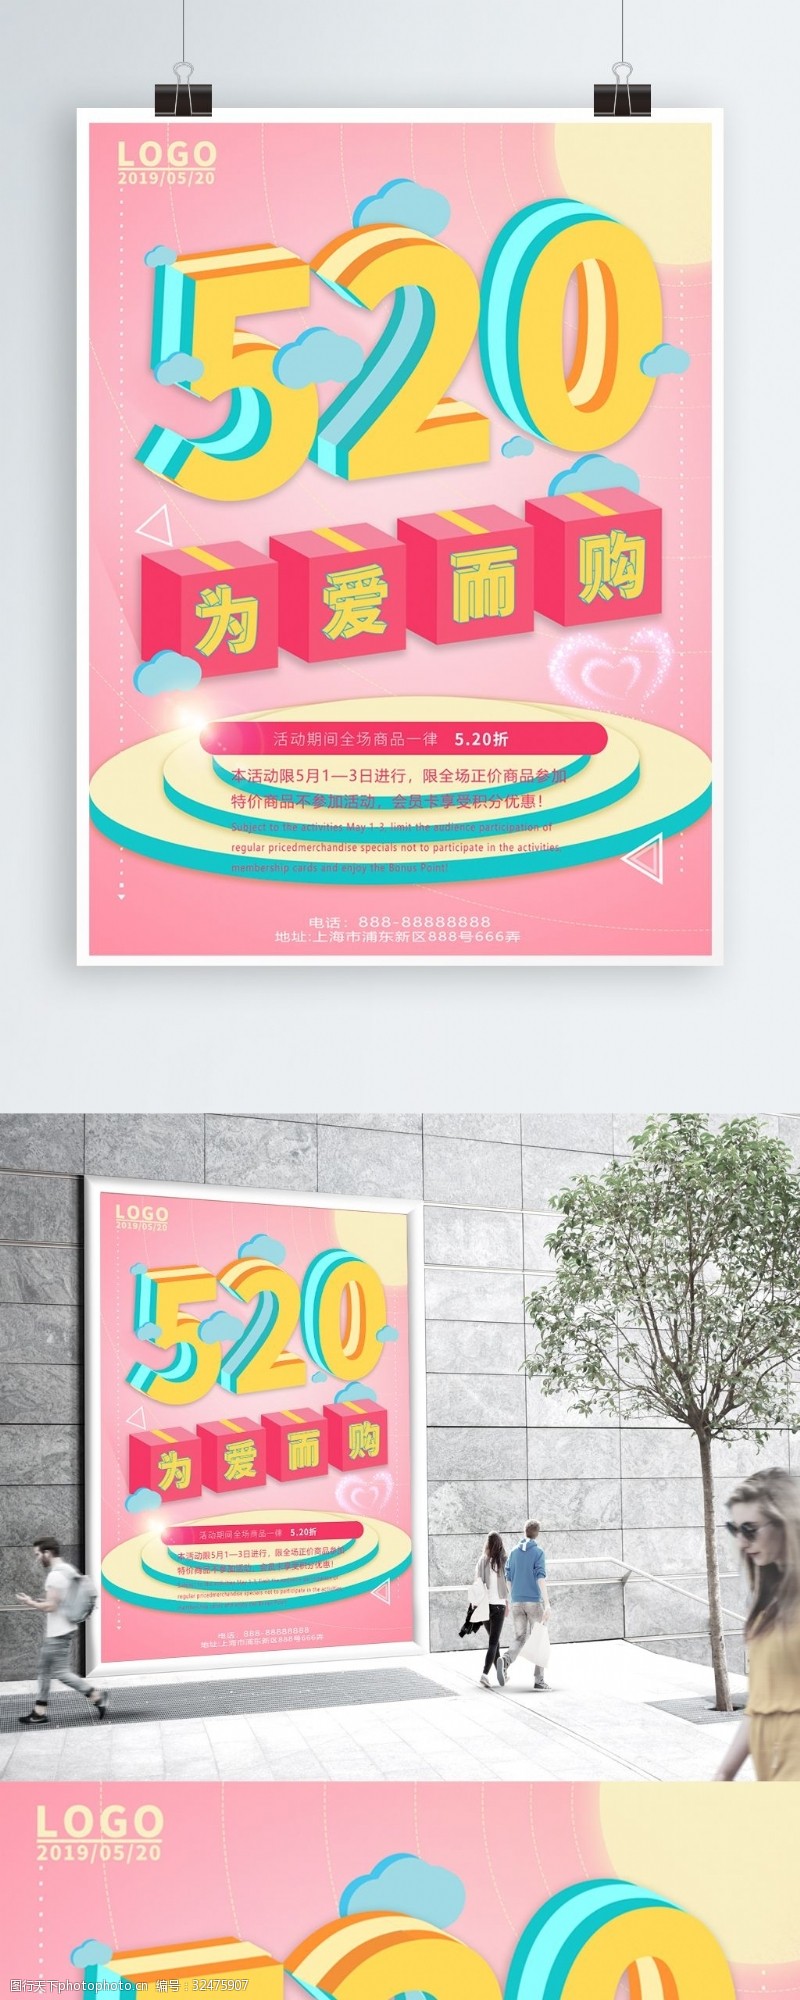 约惠520520为爱而购2.5D海报